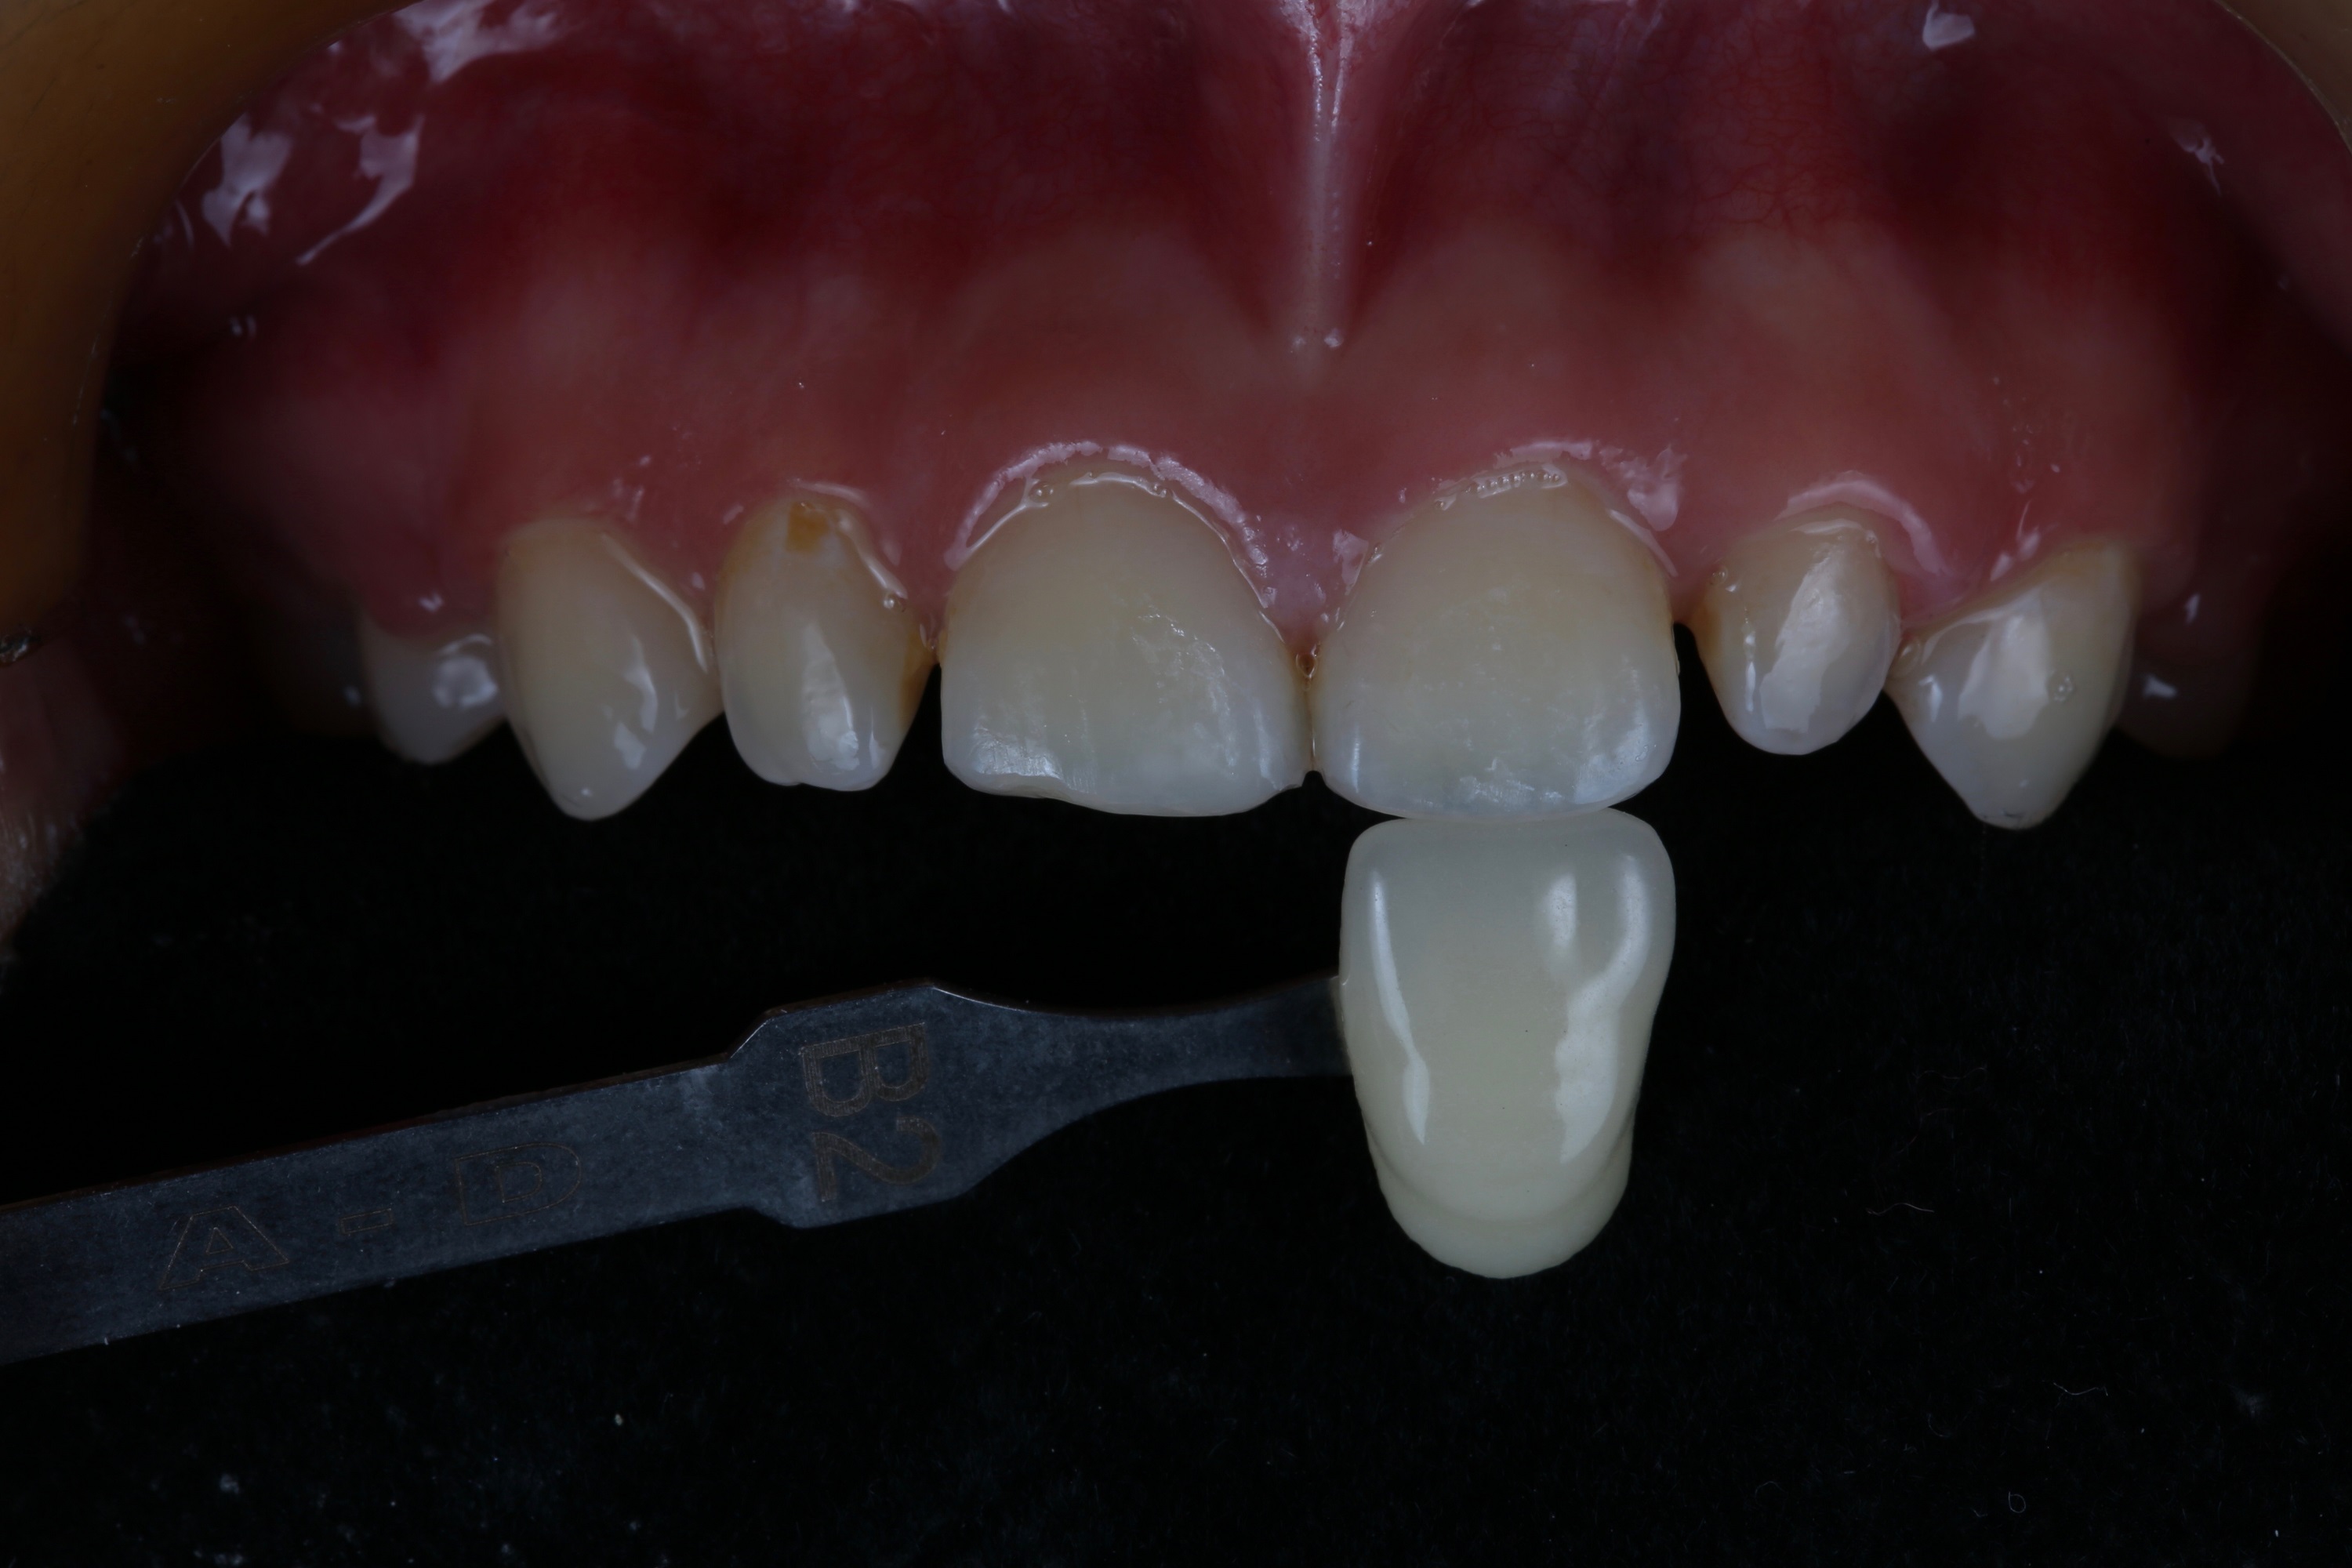 口腔数字化设计在唇腭裂患者前牙美学修复中的应用研究